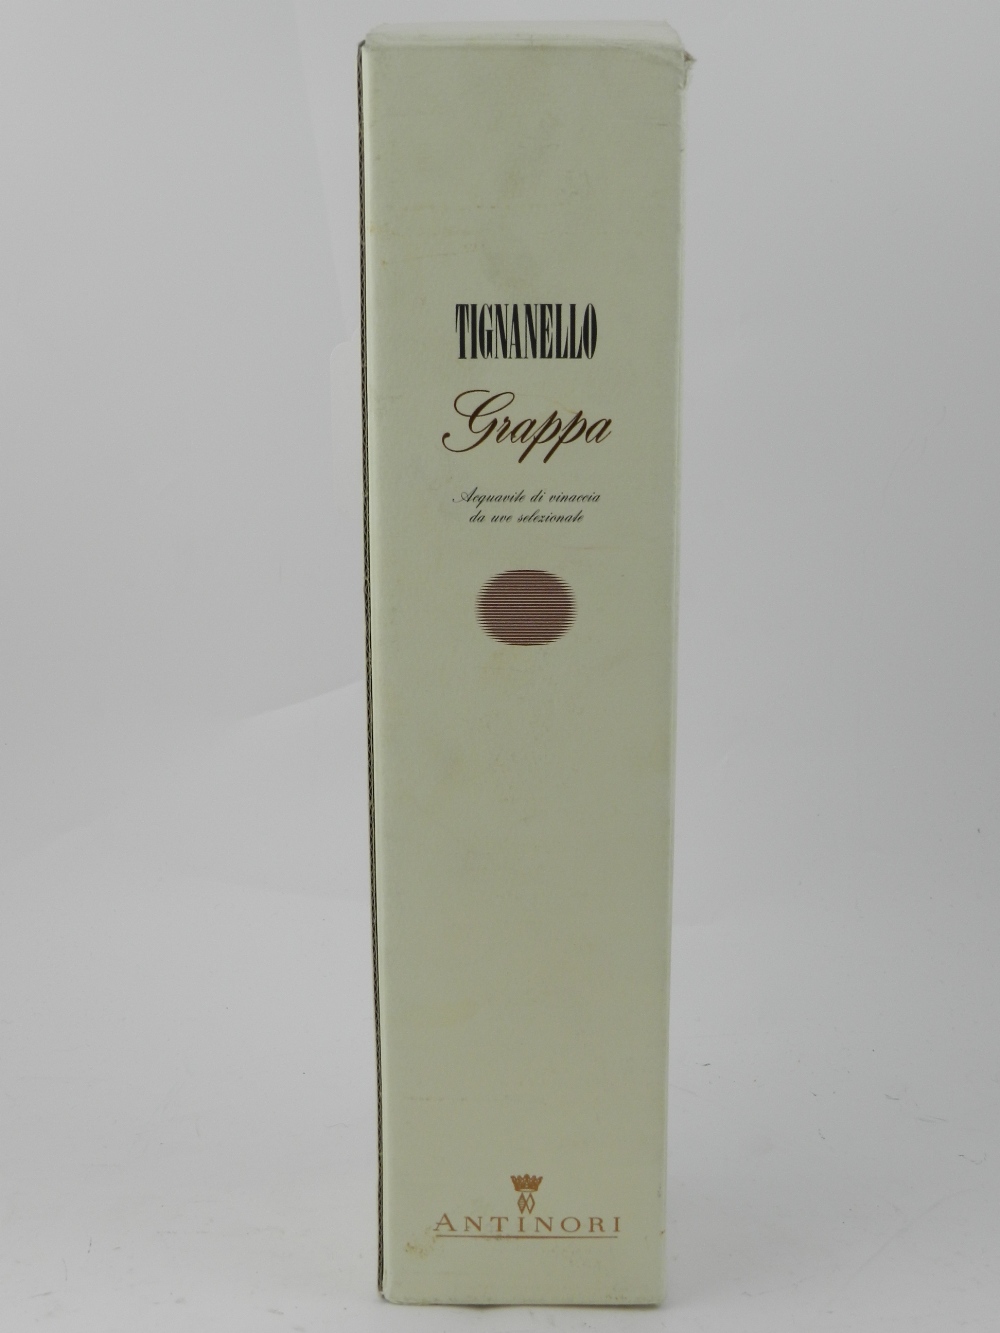 A bottle of Tignanello Grappa, 500ml